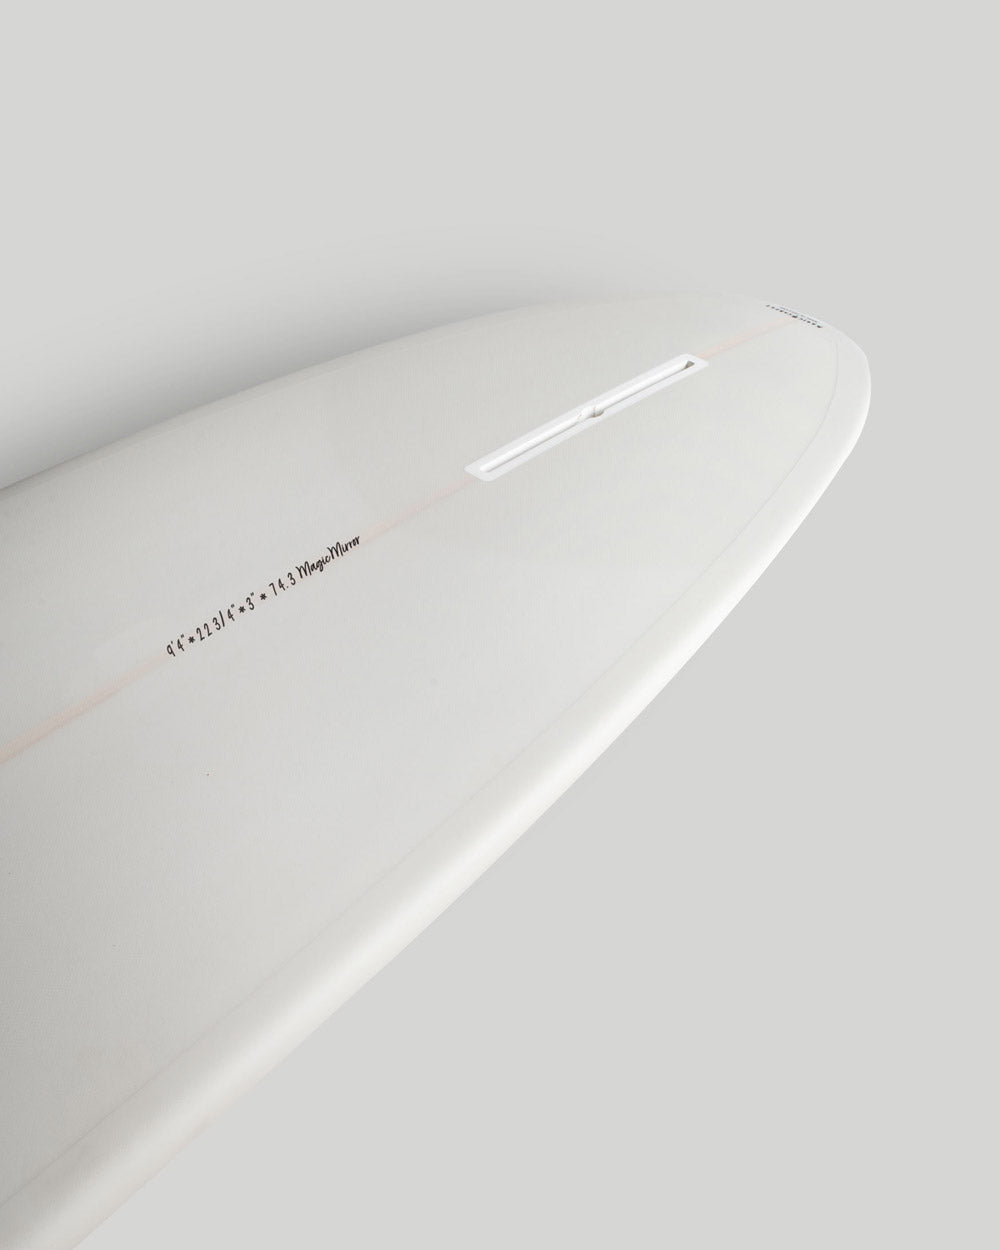 Magic Mirror - Magic Carpet Surfboards